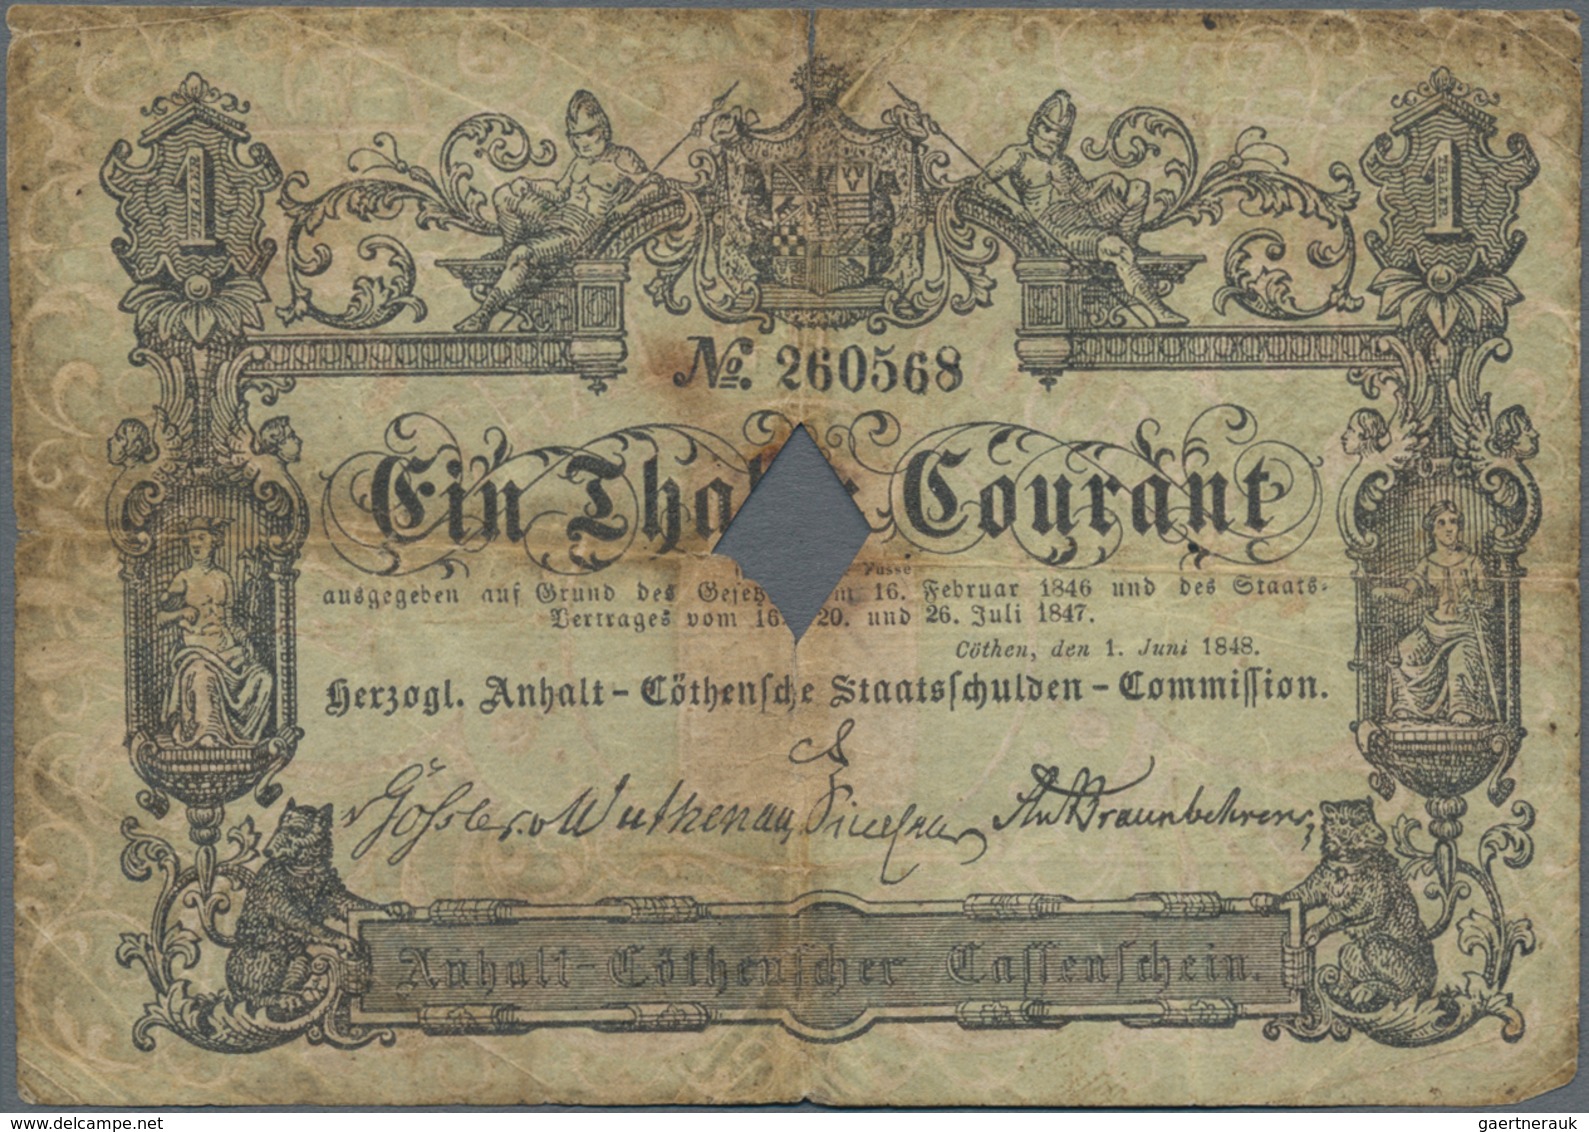 Deutschland - Altdeutsche Staaten: Herzogl. Anhalt-Cöthensche Staatsschulden-Commission 1 Thaler 184 - …-1871: Altdeutschland